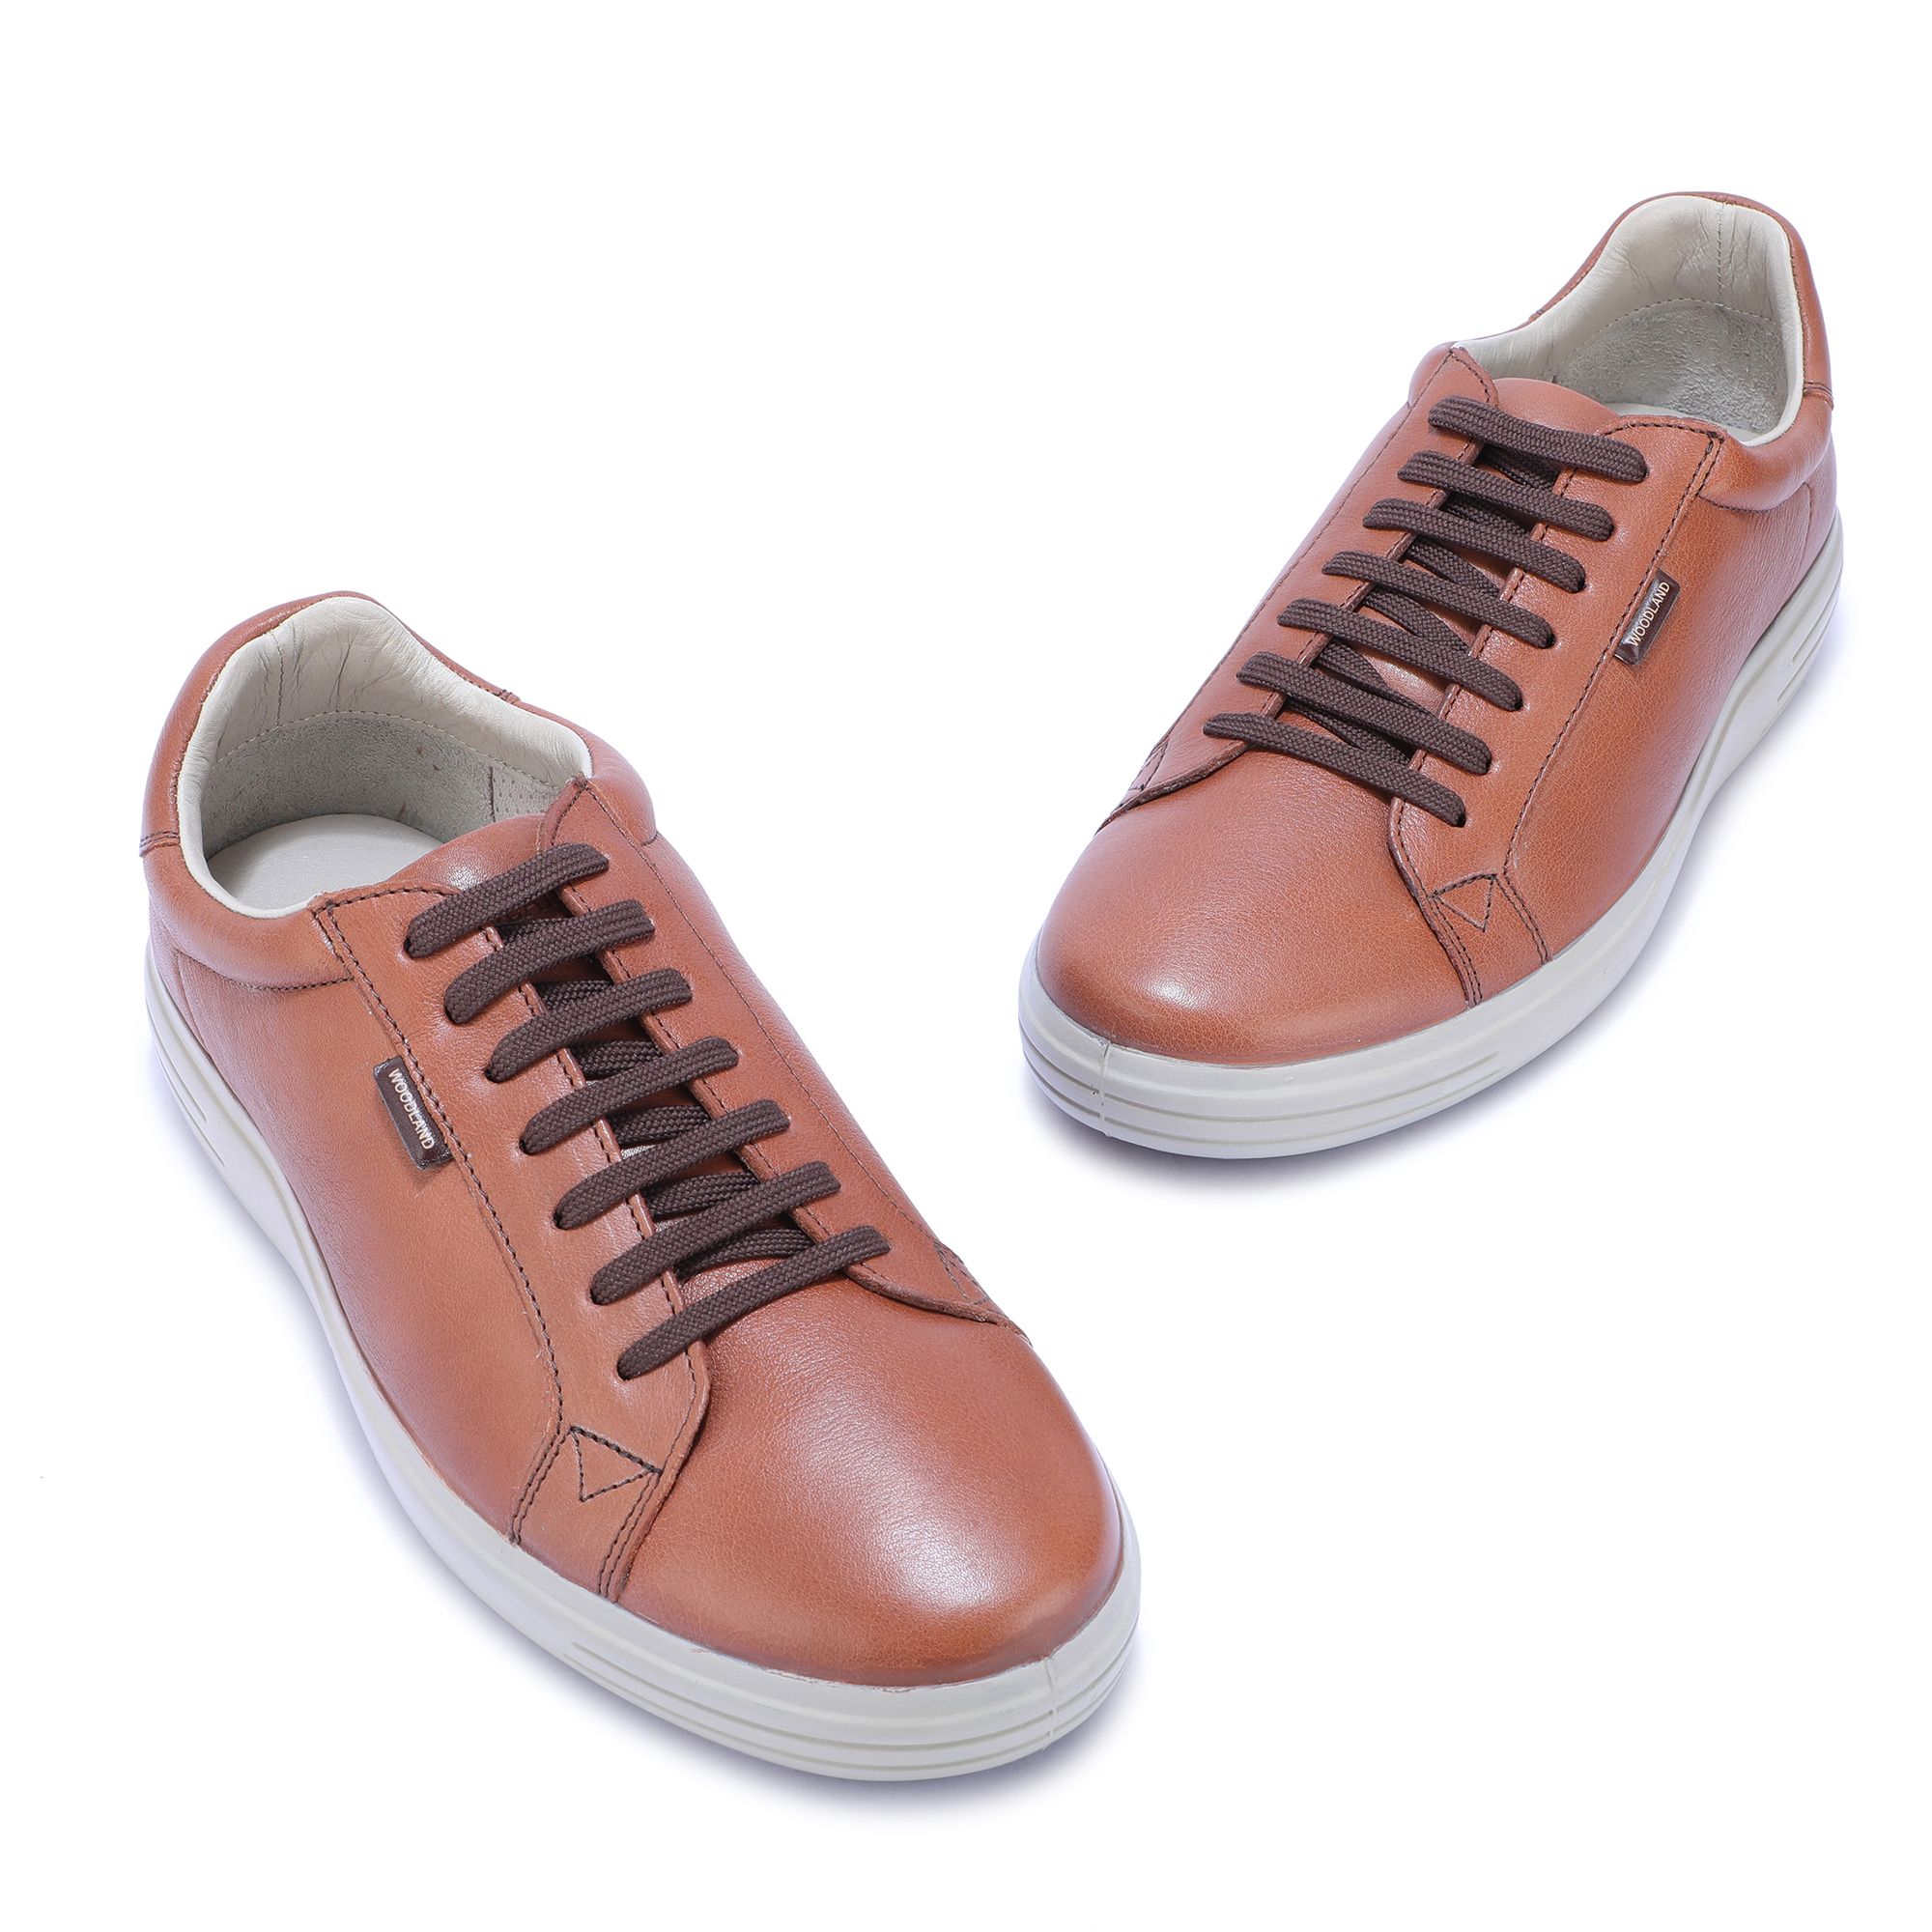 Woodland Men's shoe.. Genuine leather UK 6